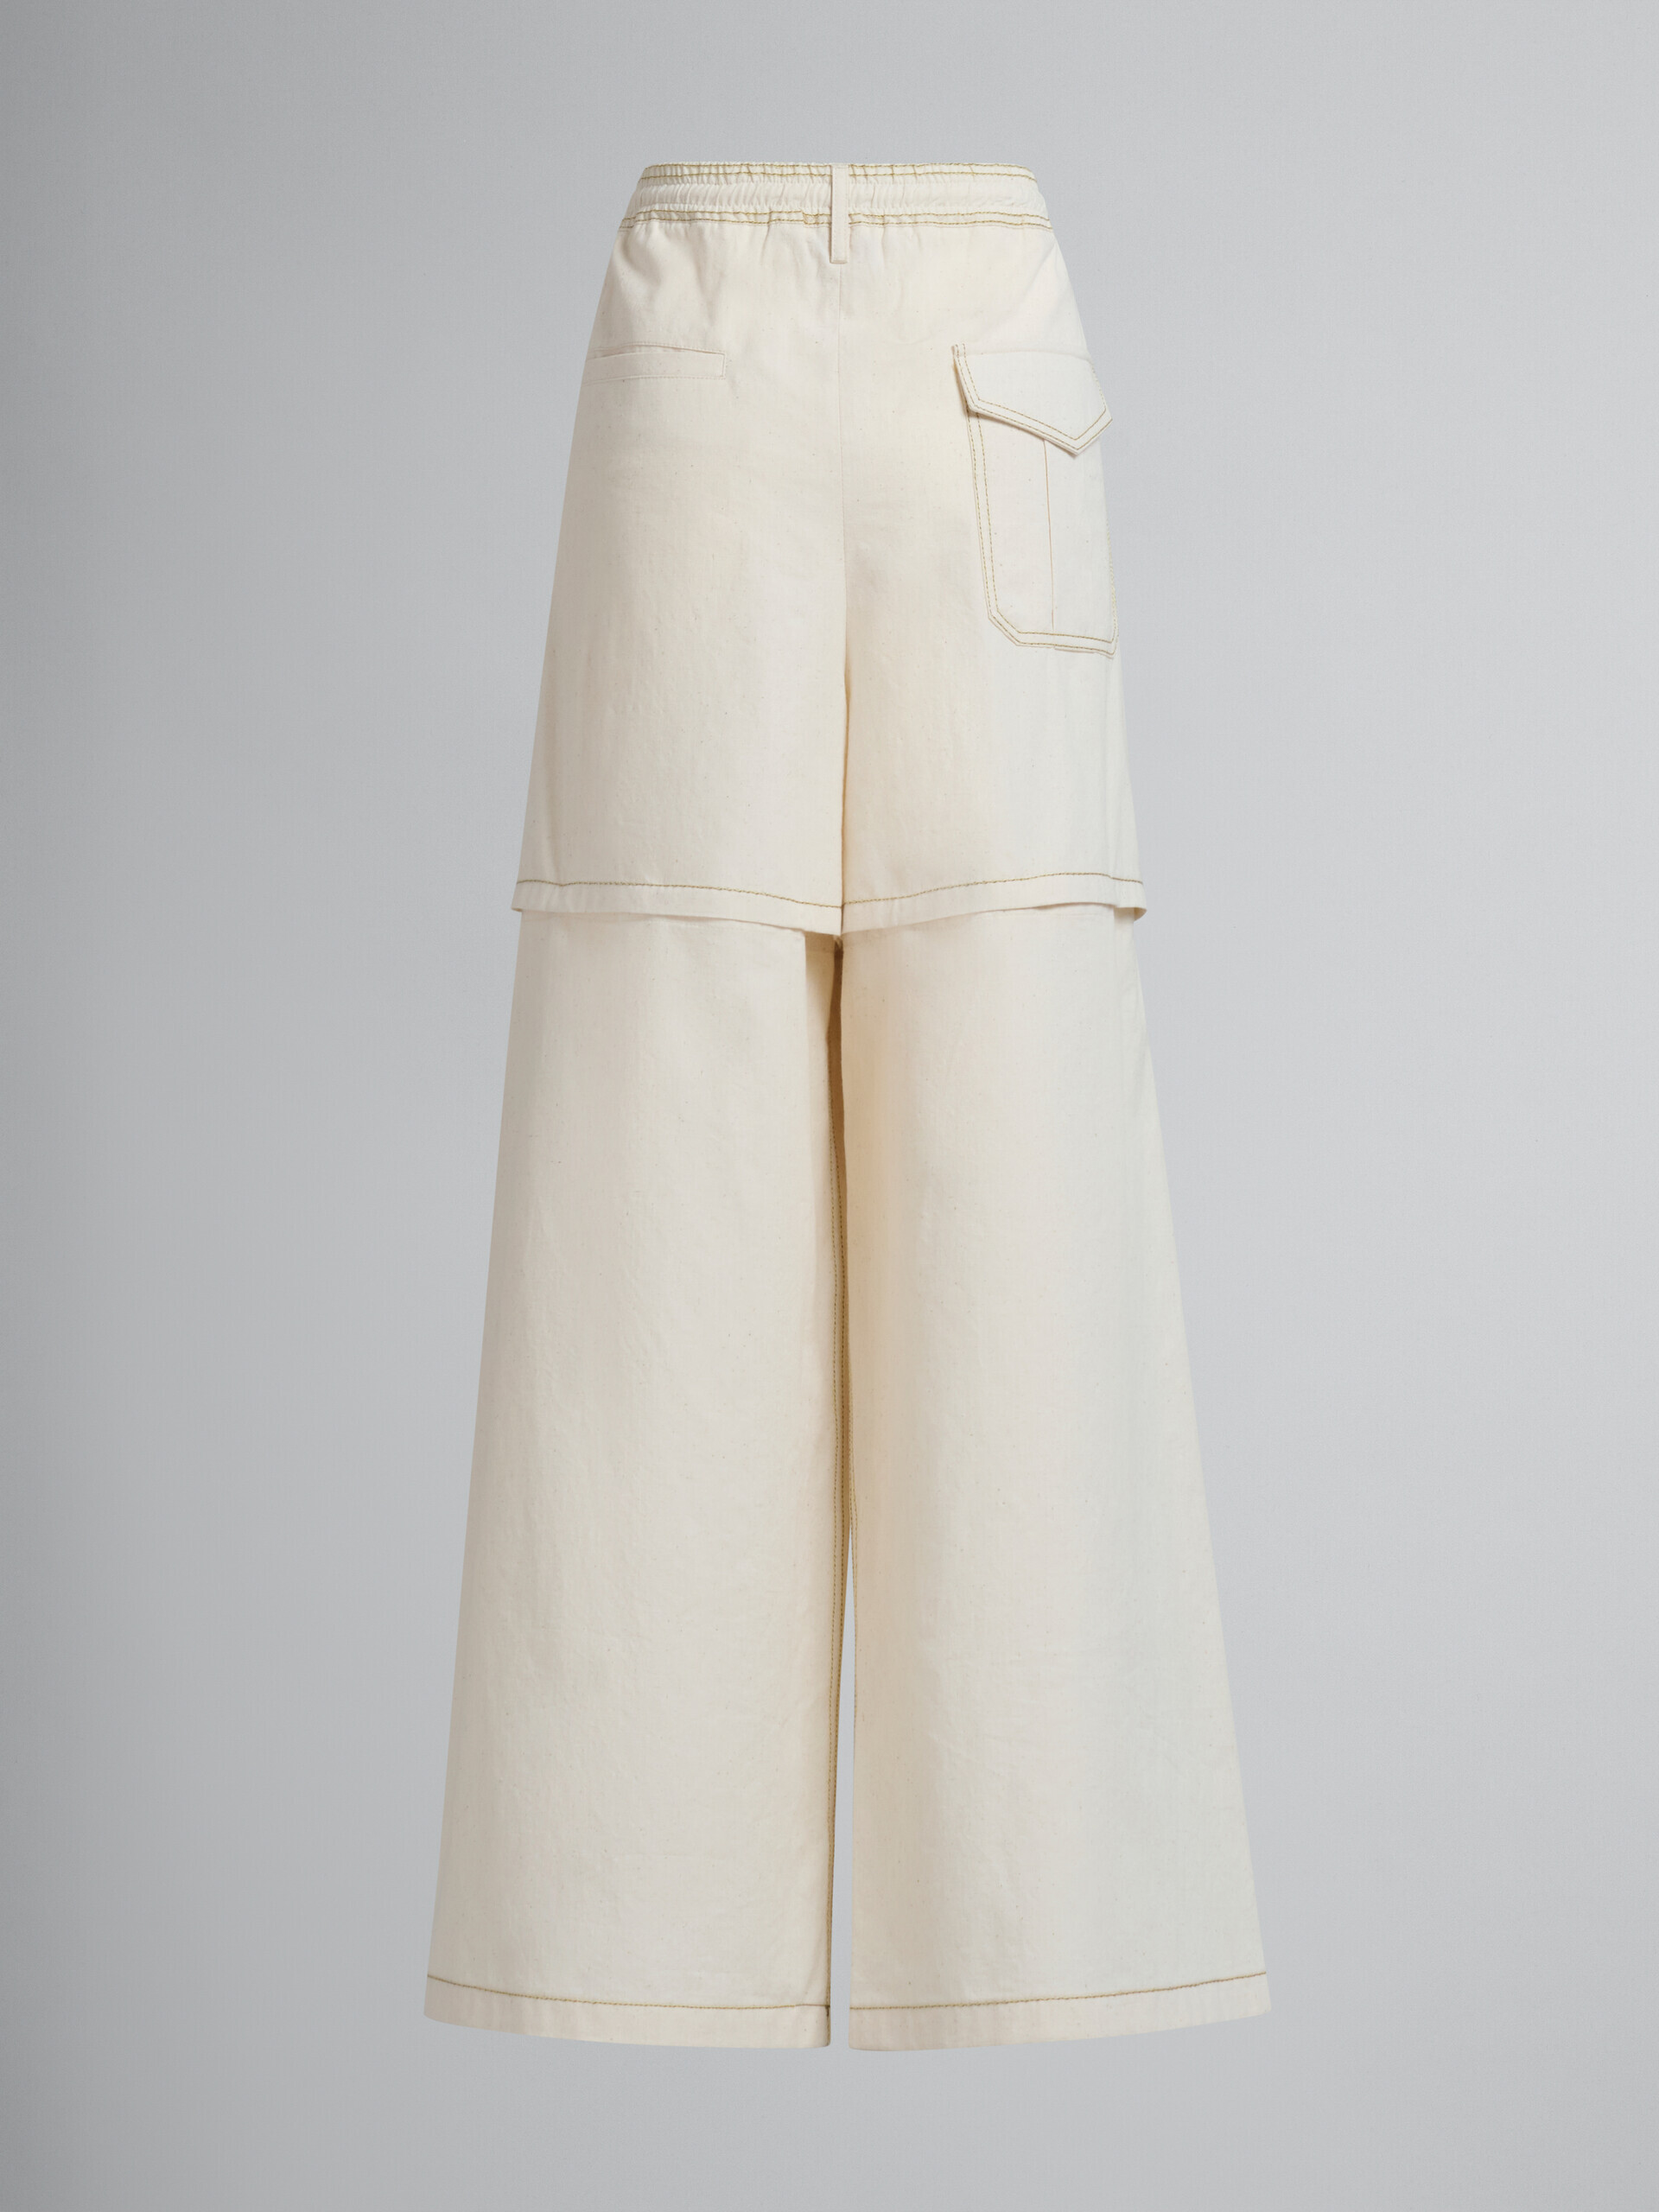 Pantaloni cargo in tela di cotone biologico beige chiaro con impunture Marni - Pantaloni - Image 3